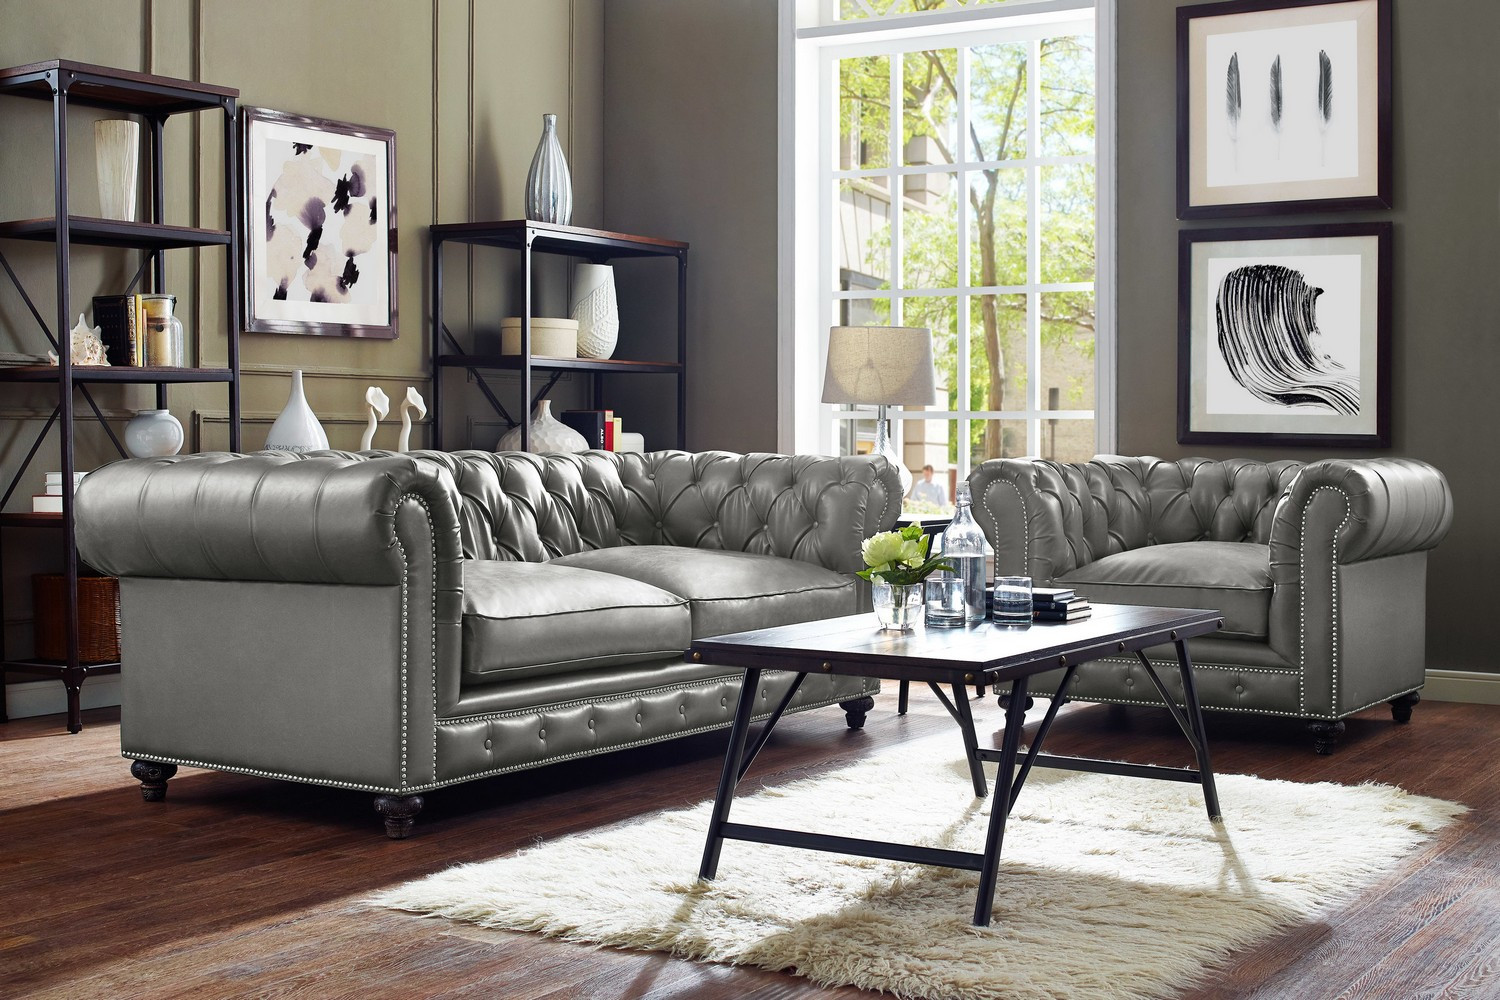 Rustic Living Room Sets
 TOV Furniture Durango Rustic Grey Living Room Set S98 C53